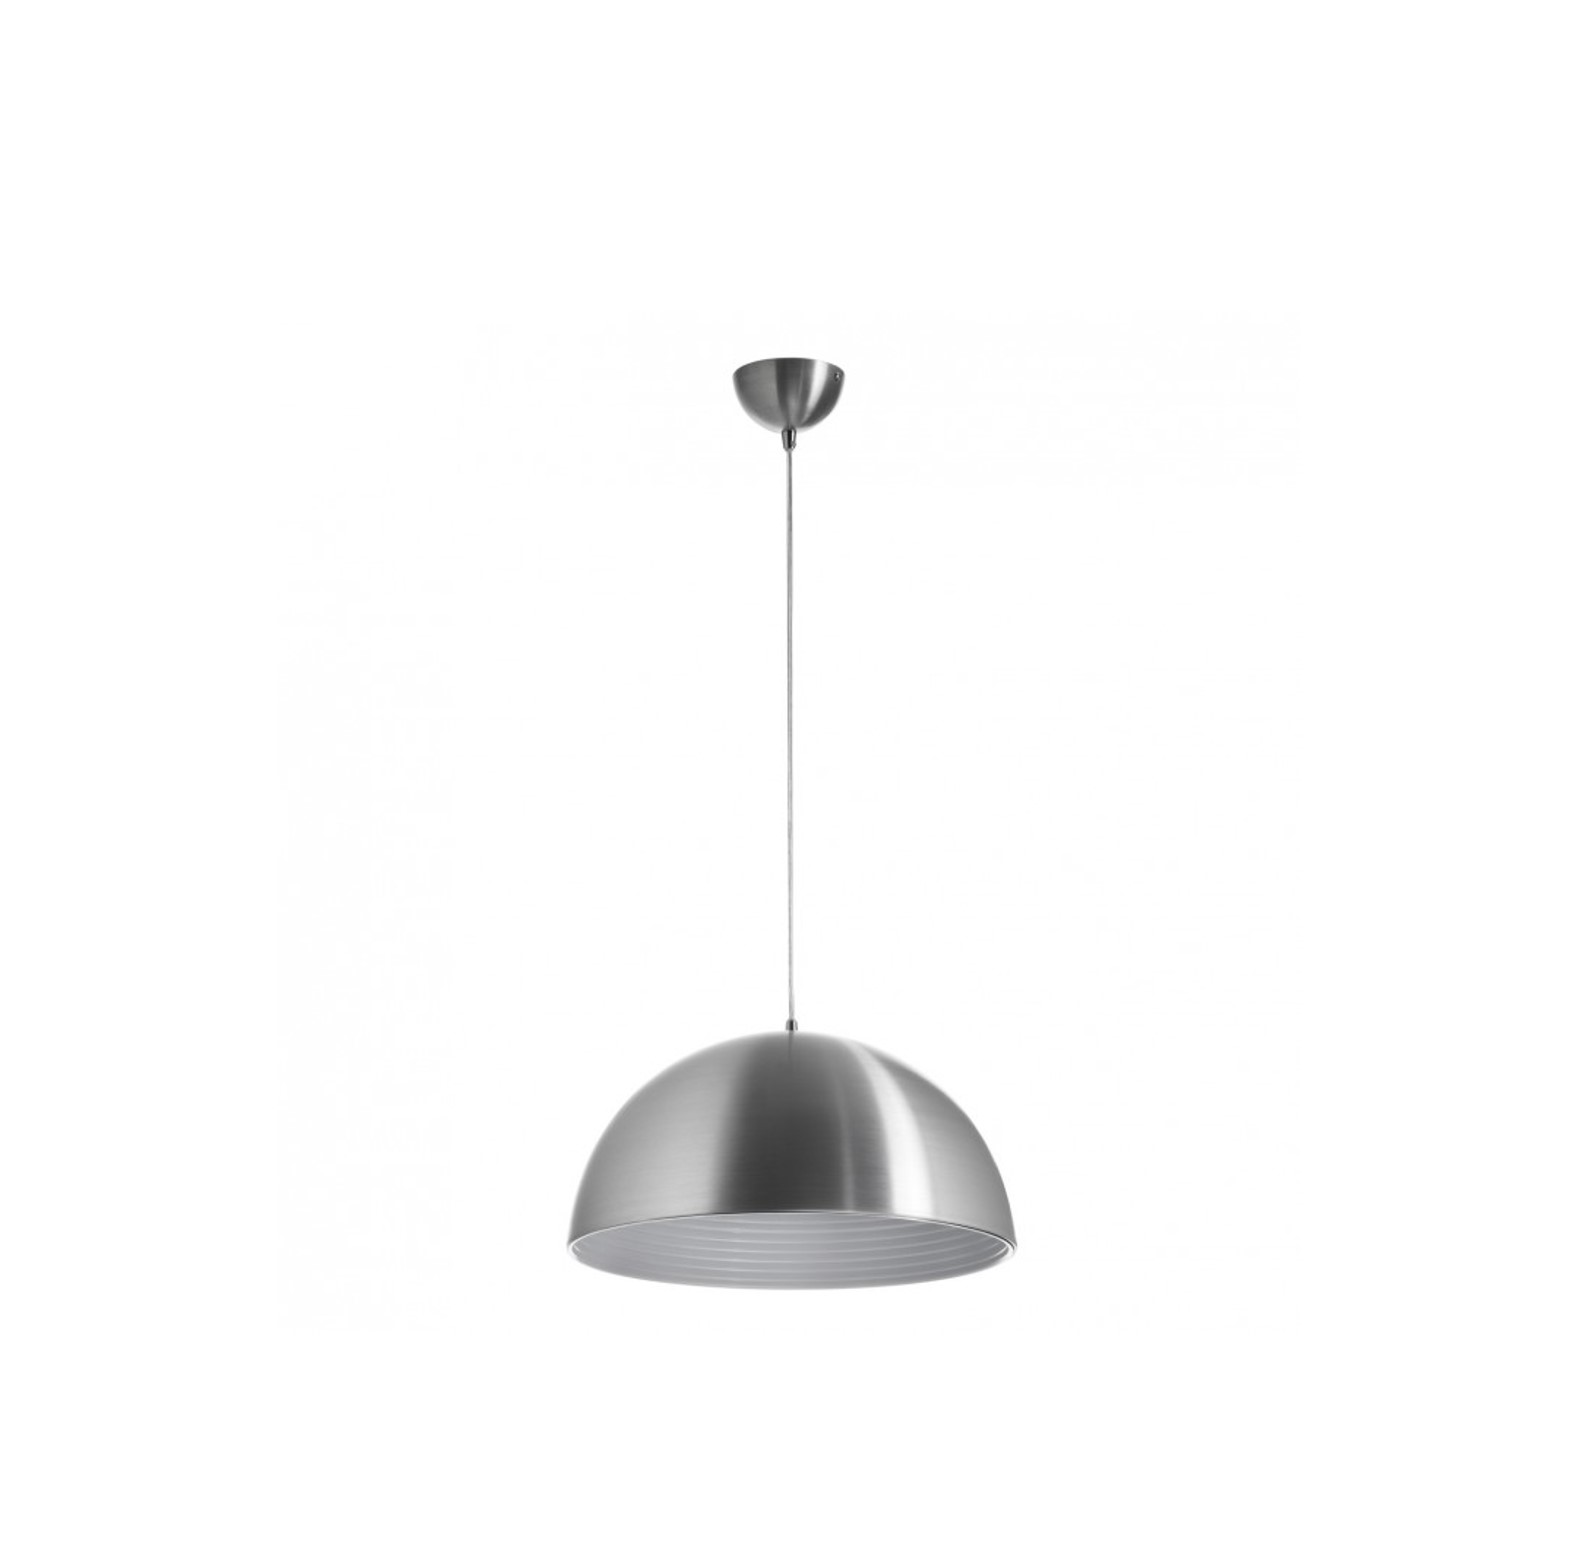 De Mildred is een hanglamp en ontworpen twee kleuren: wit of geborsteld aluminium; het is dus een ideale armatuur voor decoratie en verlichting van binnenruimtes als woonkamers of eetkamers.